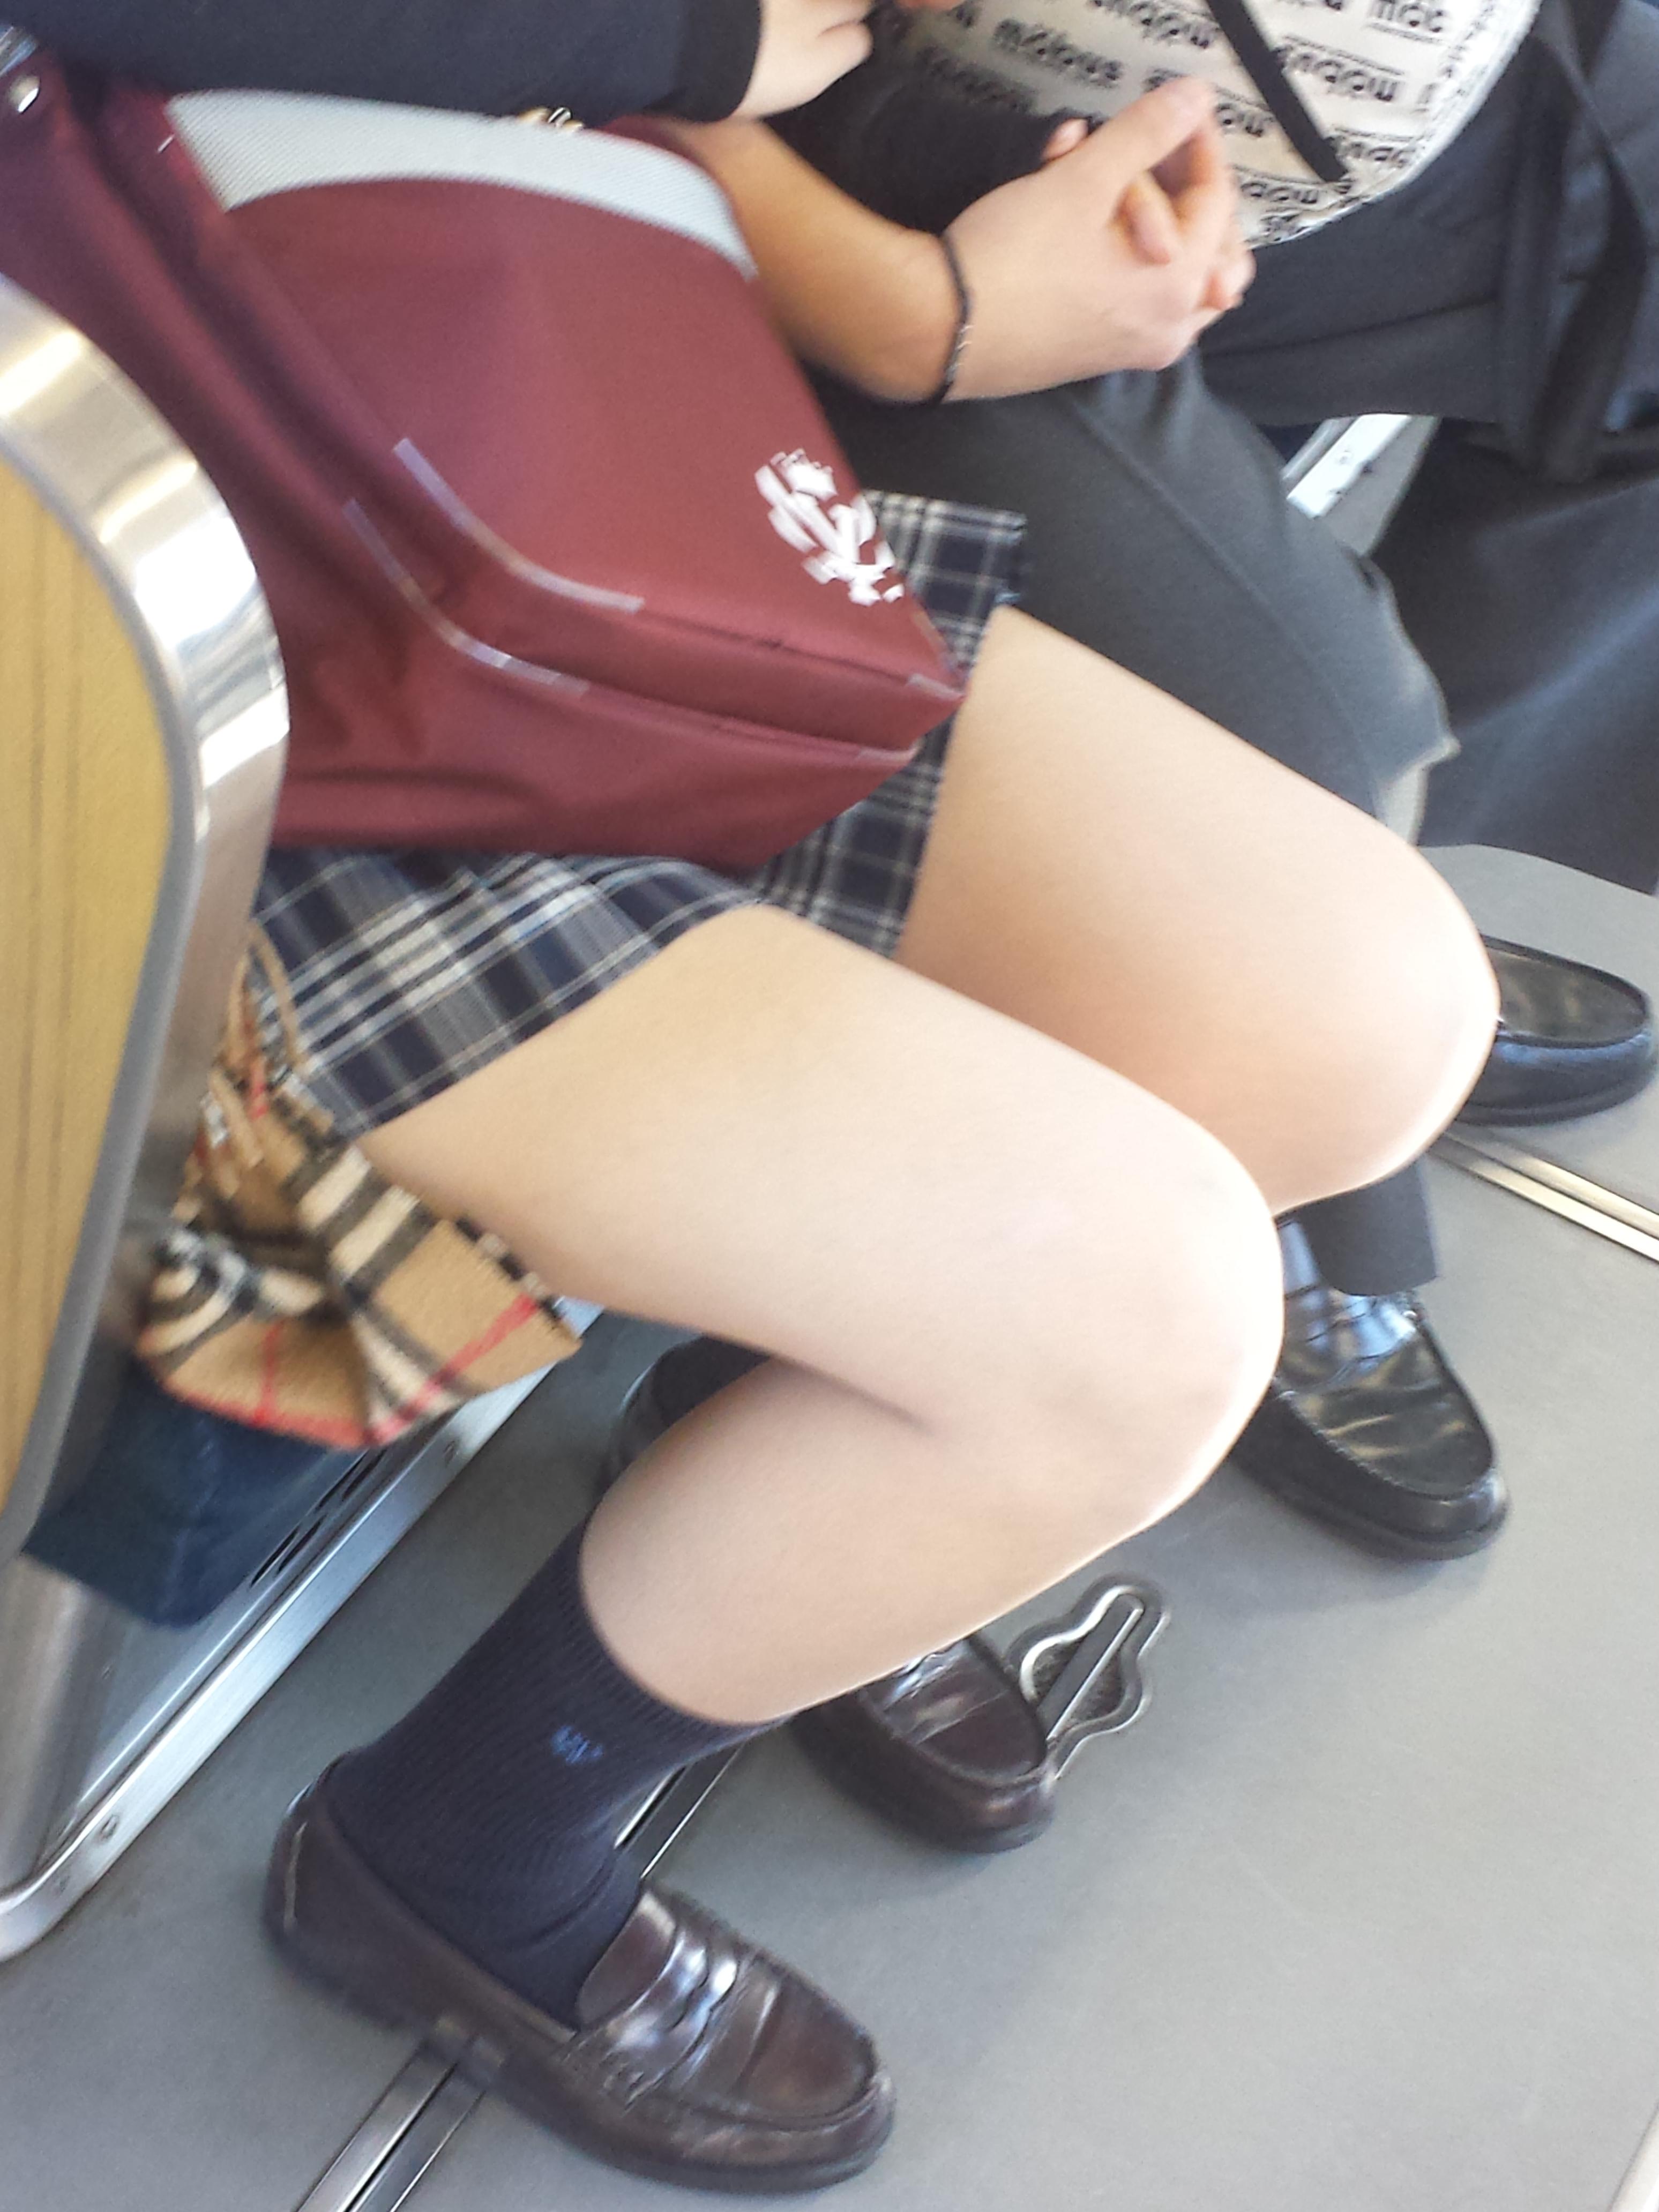 男なら絶対チラ見してしまう電車内の女子高生画像 (2)